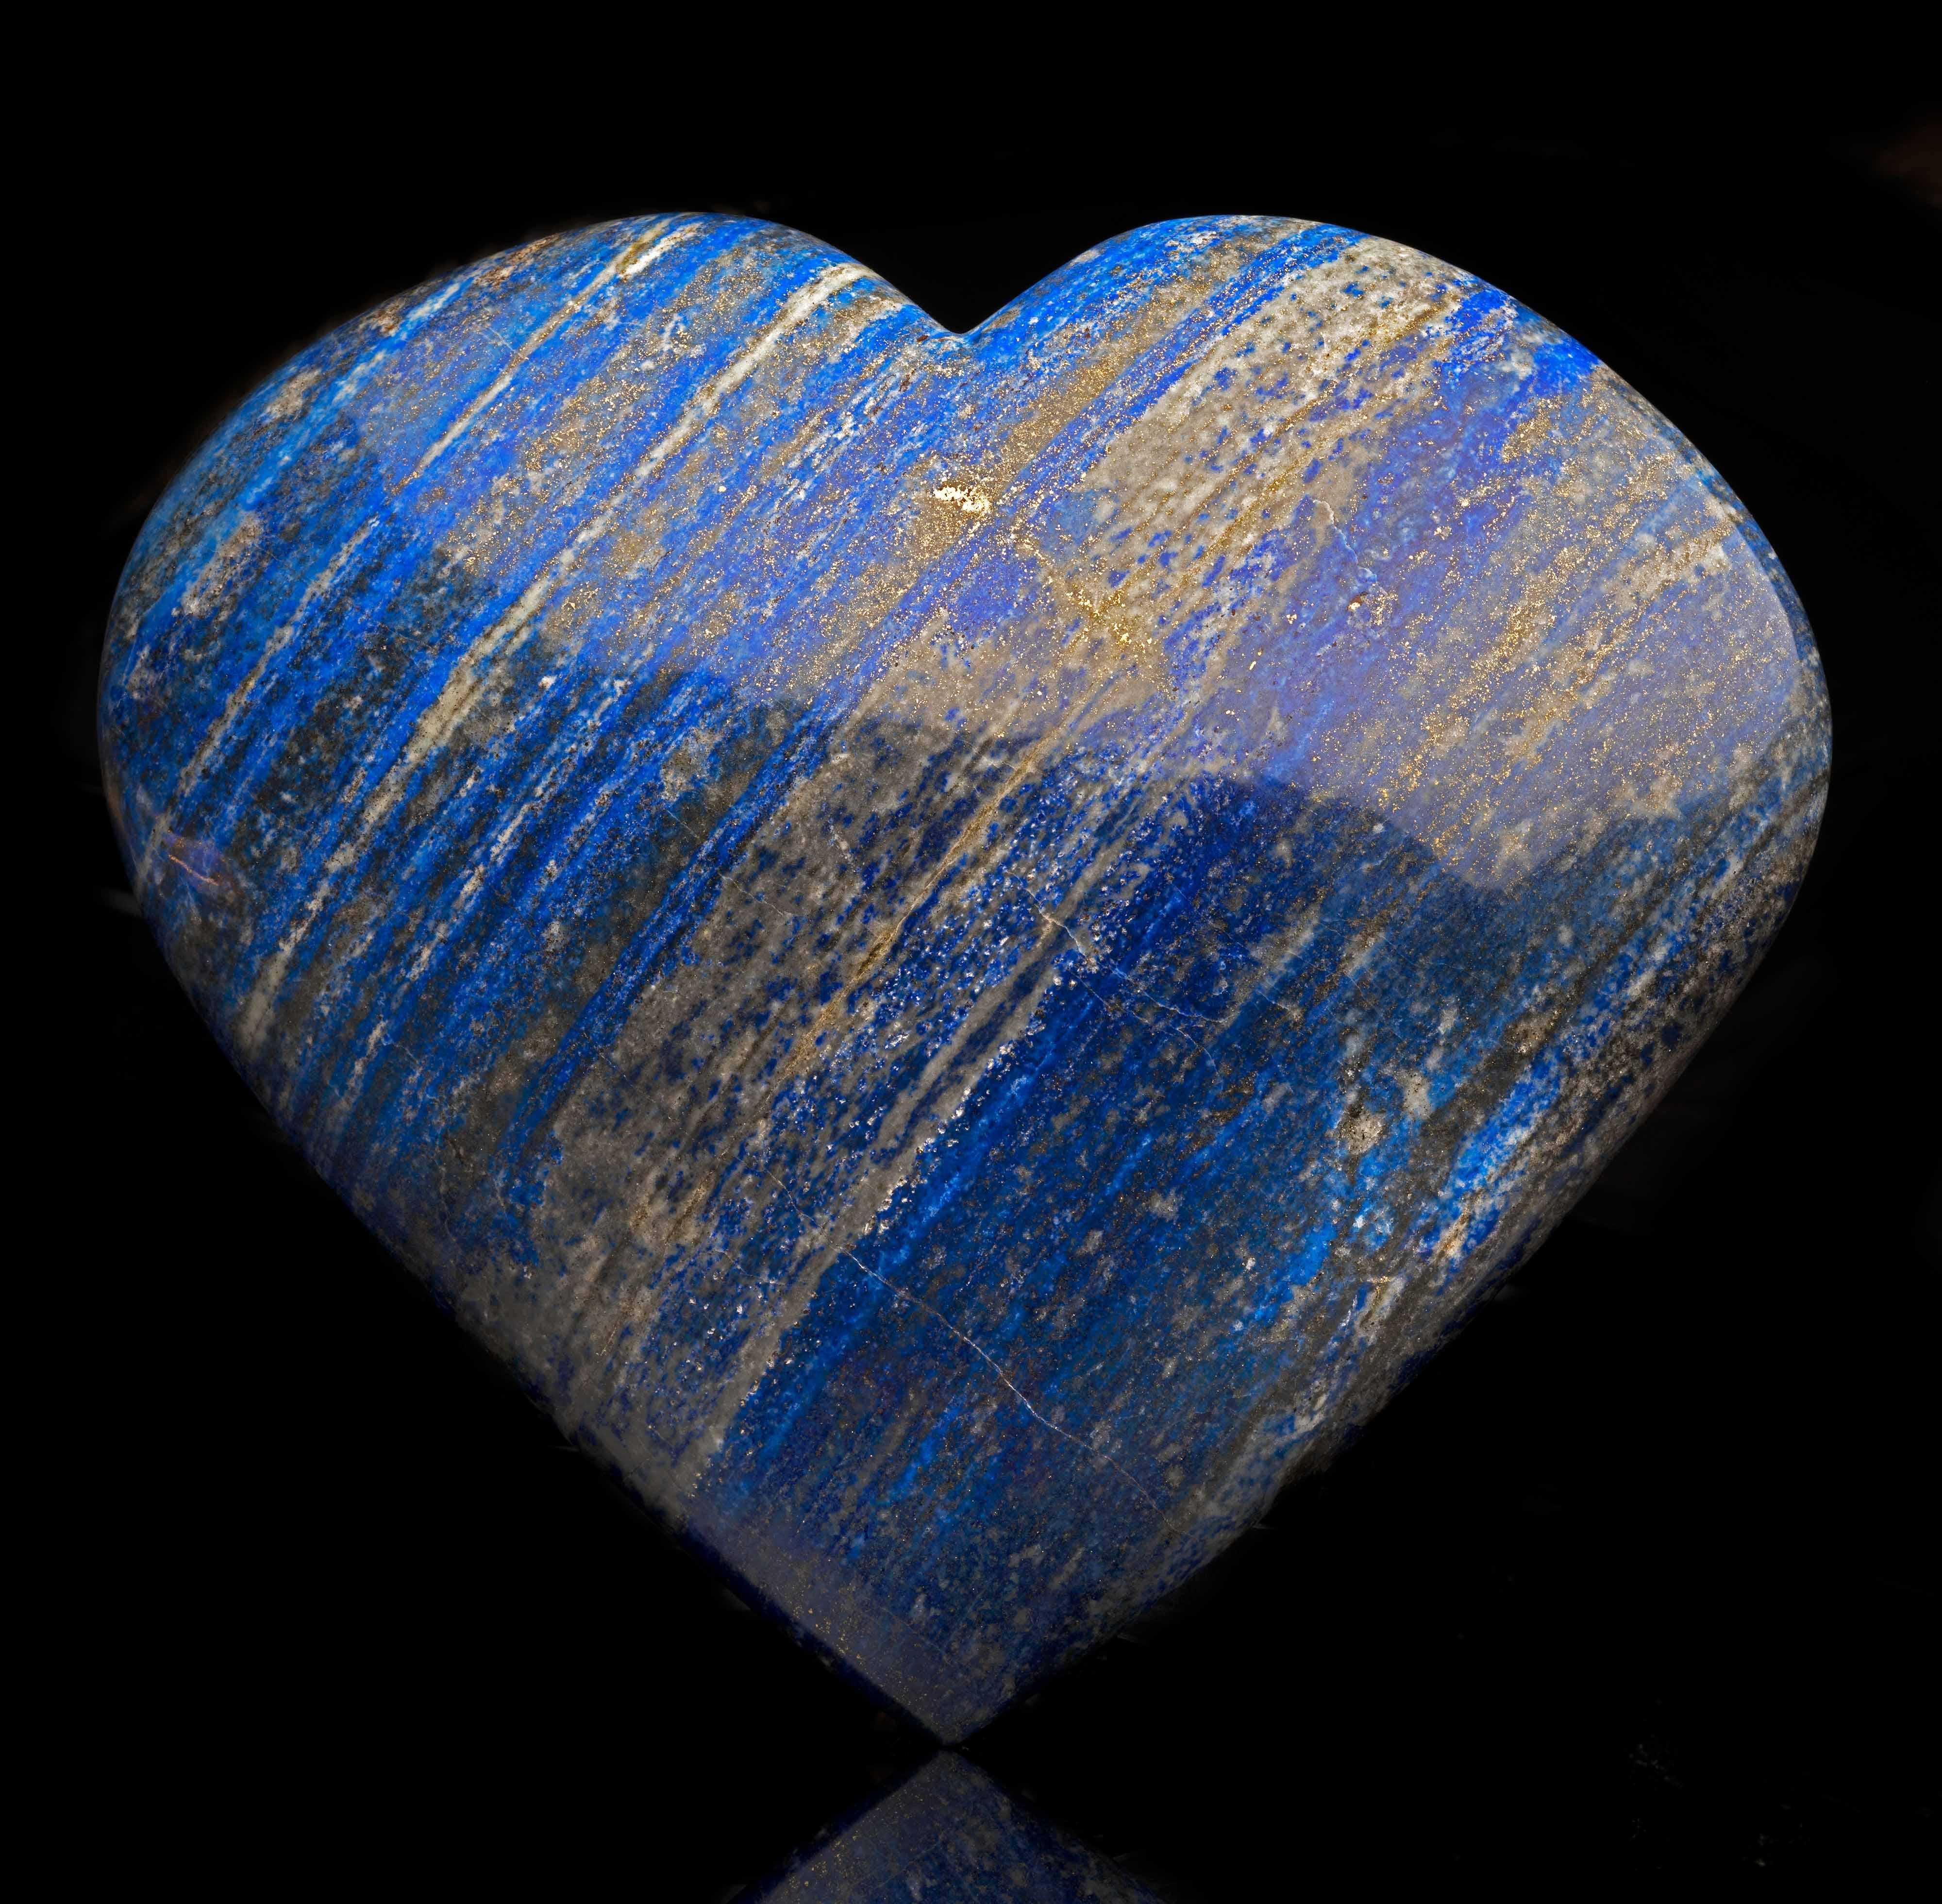 Cet énorme cœur en provenance d'Afghanistan a été sculpté et poli à la main à partir d'une seule pièce de lapis-lazuli authentique, de belle couleur, présentant le chatoiement des dépôts de pyrite et des bandes de calcite blanche qui contrastent